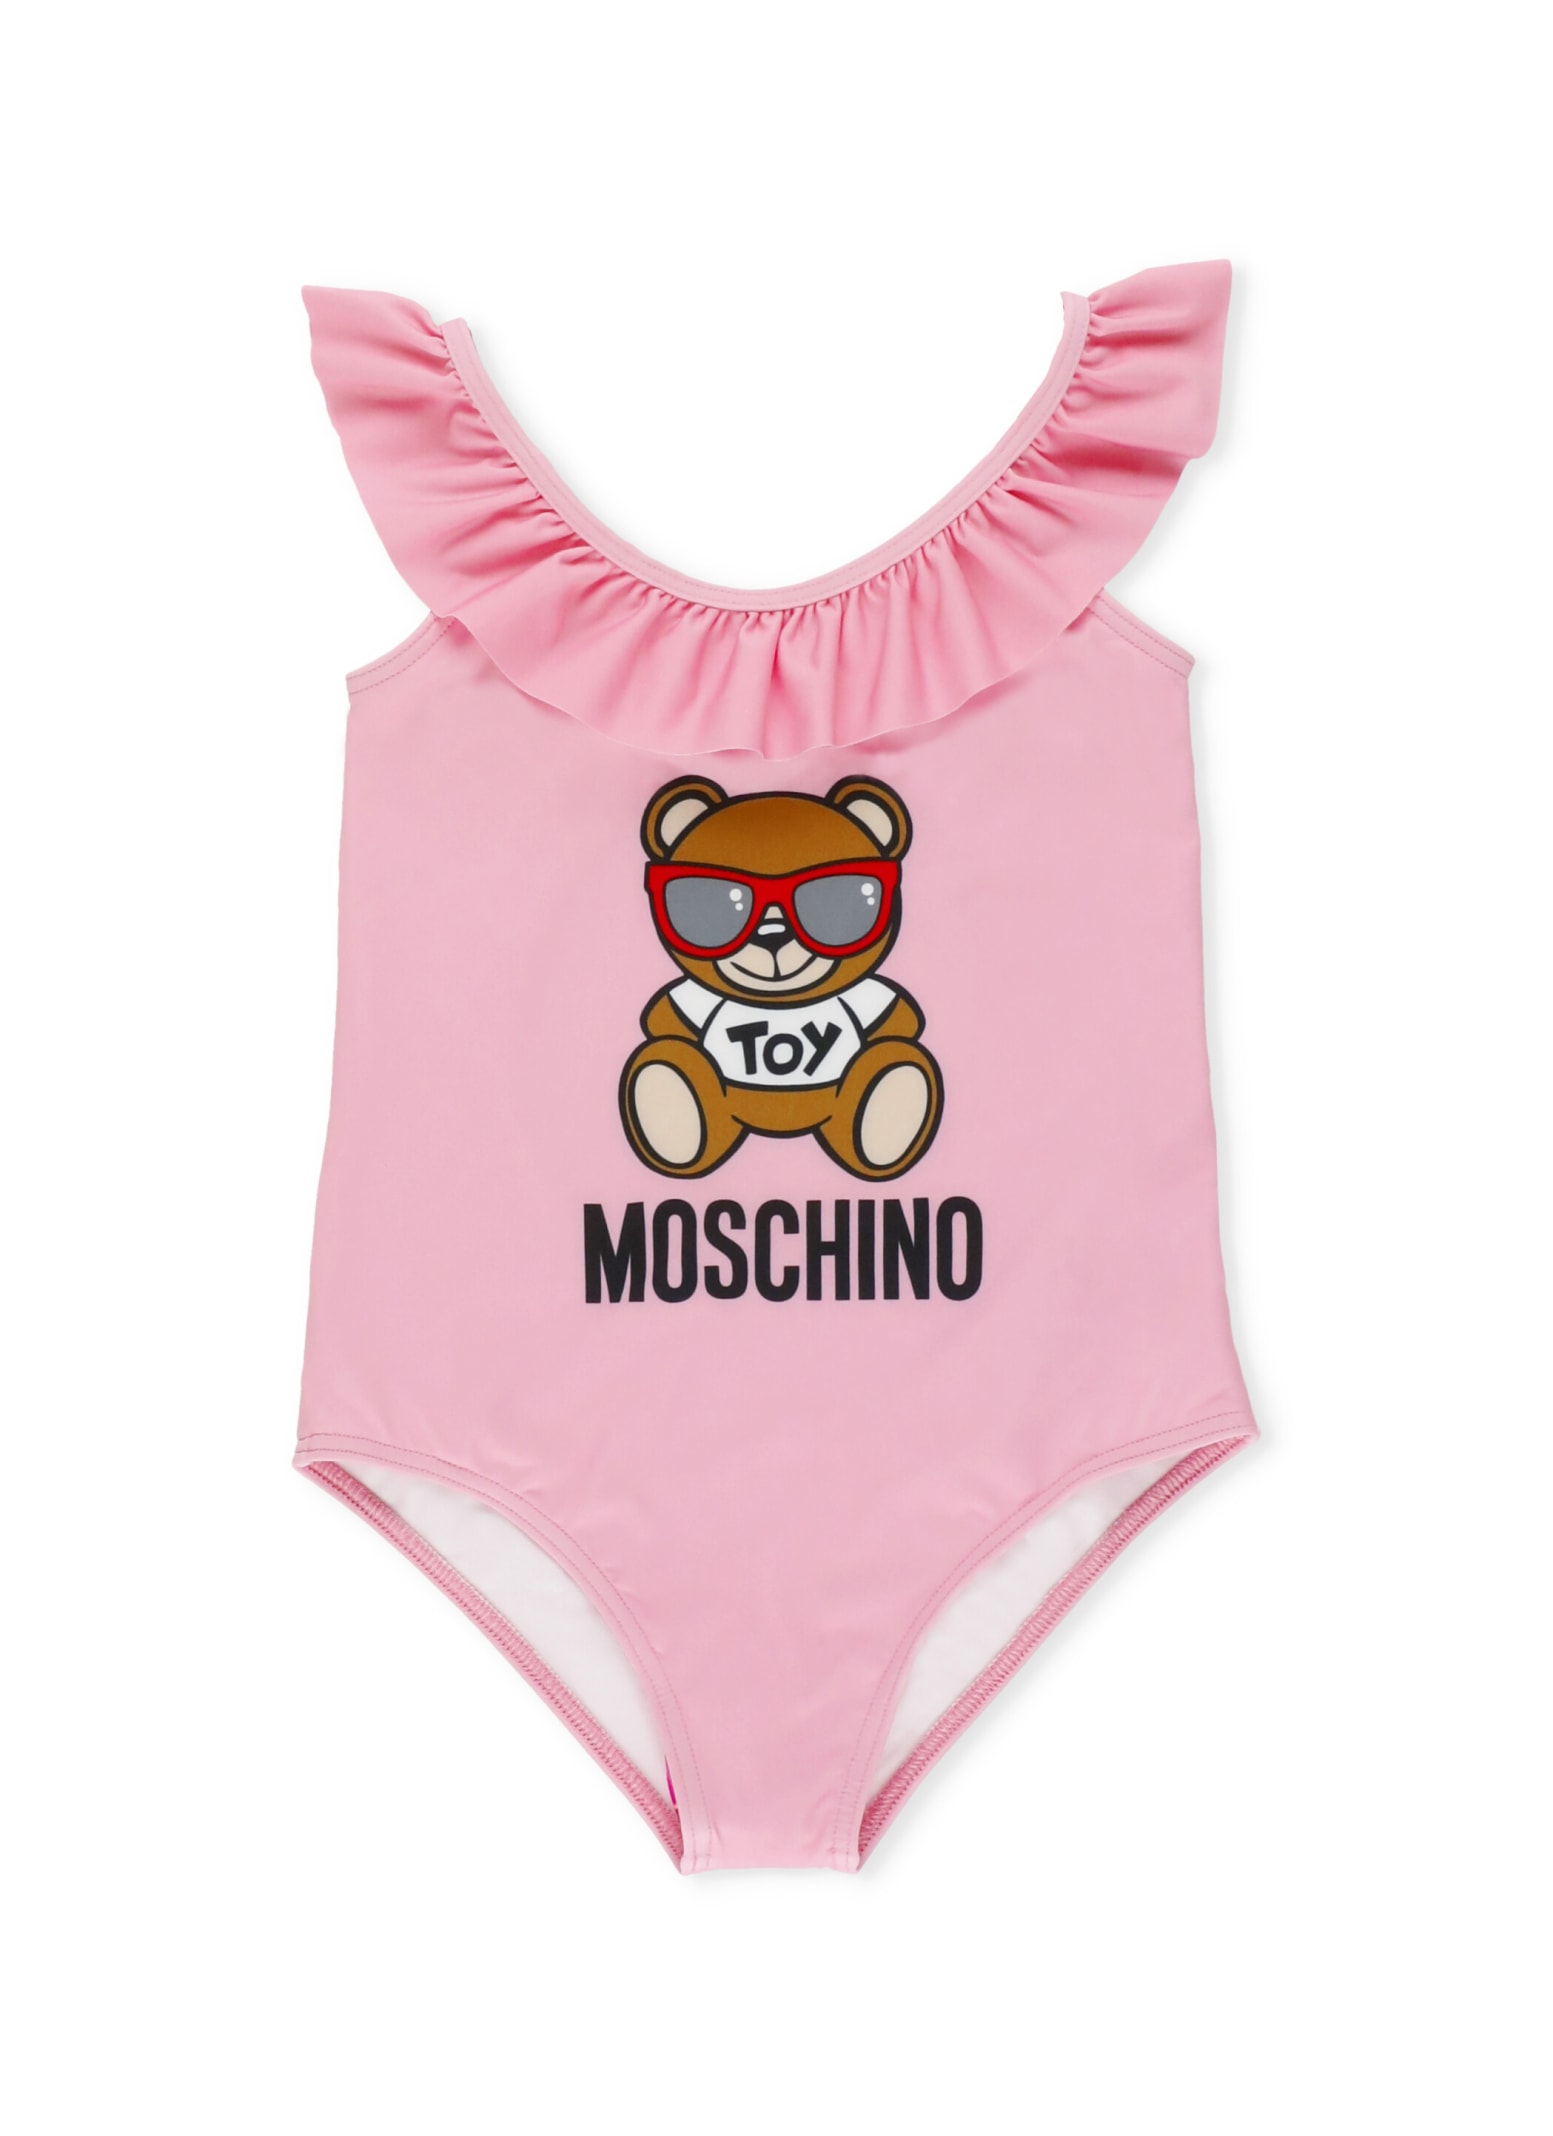 Moschino Baywatch Teddy Bear One Piece Swimsuit